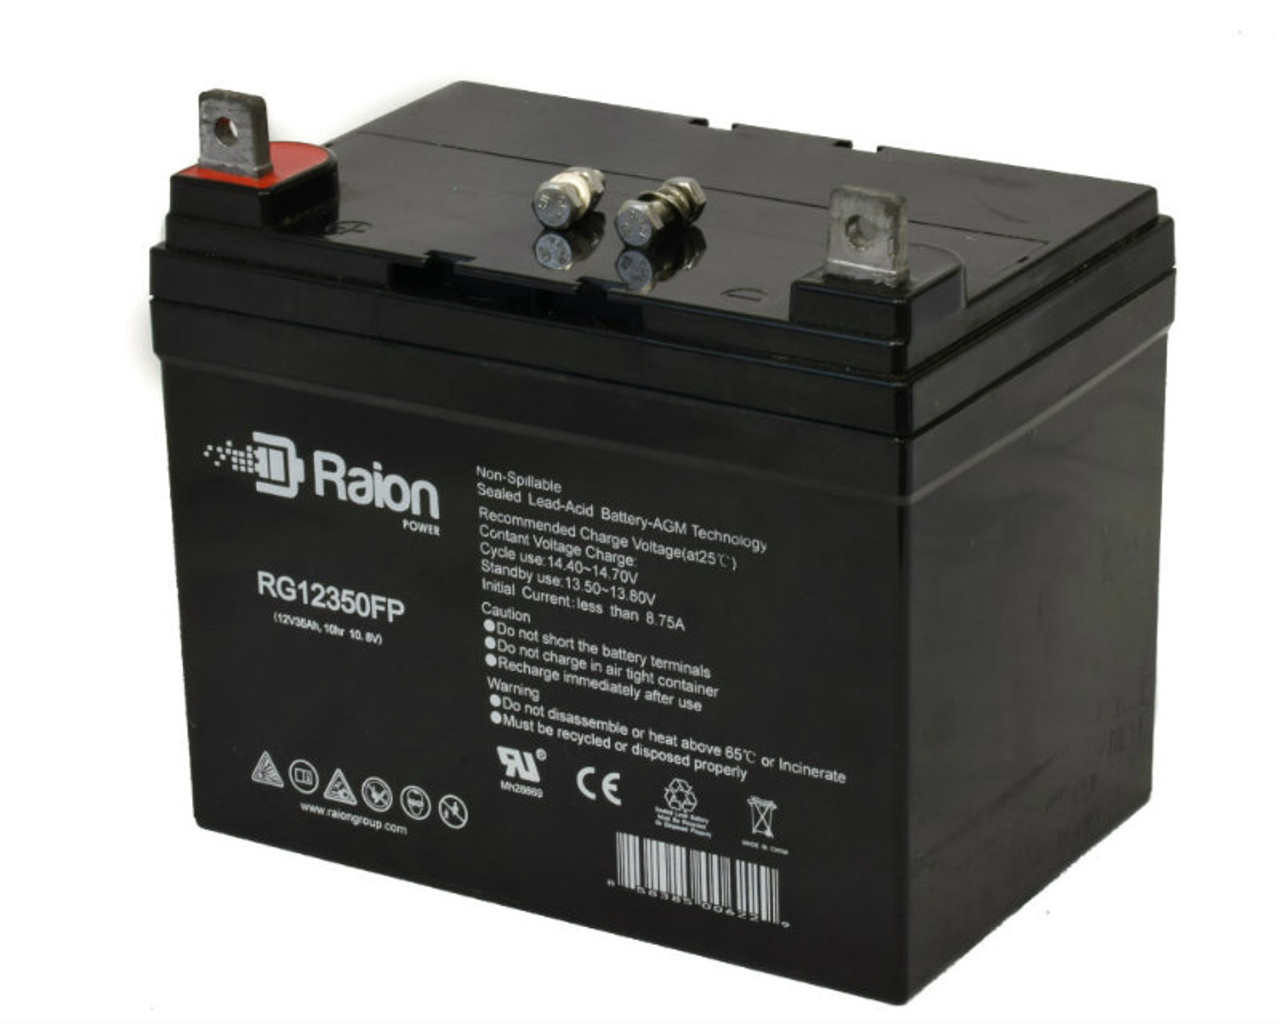 Raion Power Replacement 12V 35Ah RG12350FP Battery for BatteryMart SLA-12V35